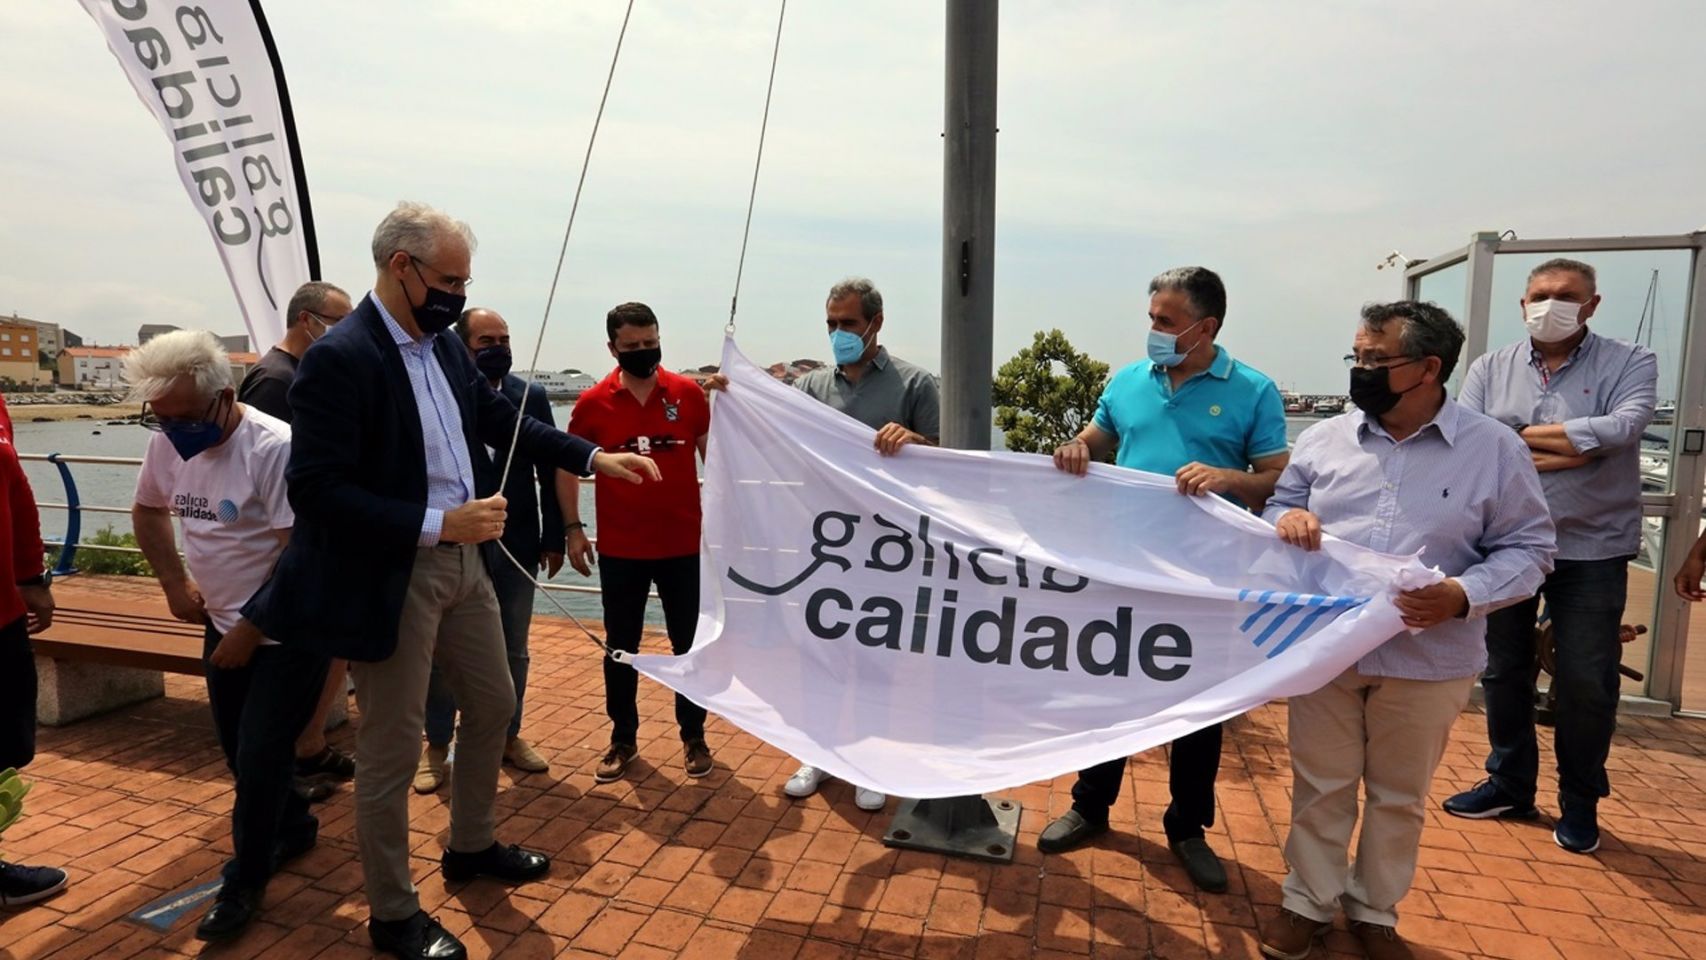 El vicepresidente segundo de la Xunta, Francisco Conde, entrega el distintivo 'Galicia Calidade' al Club Náutico Boiro-Marina Cabo de Cruz